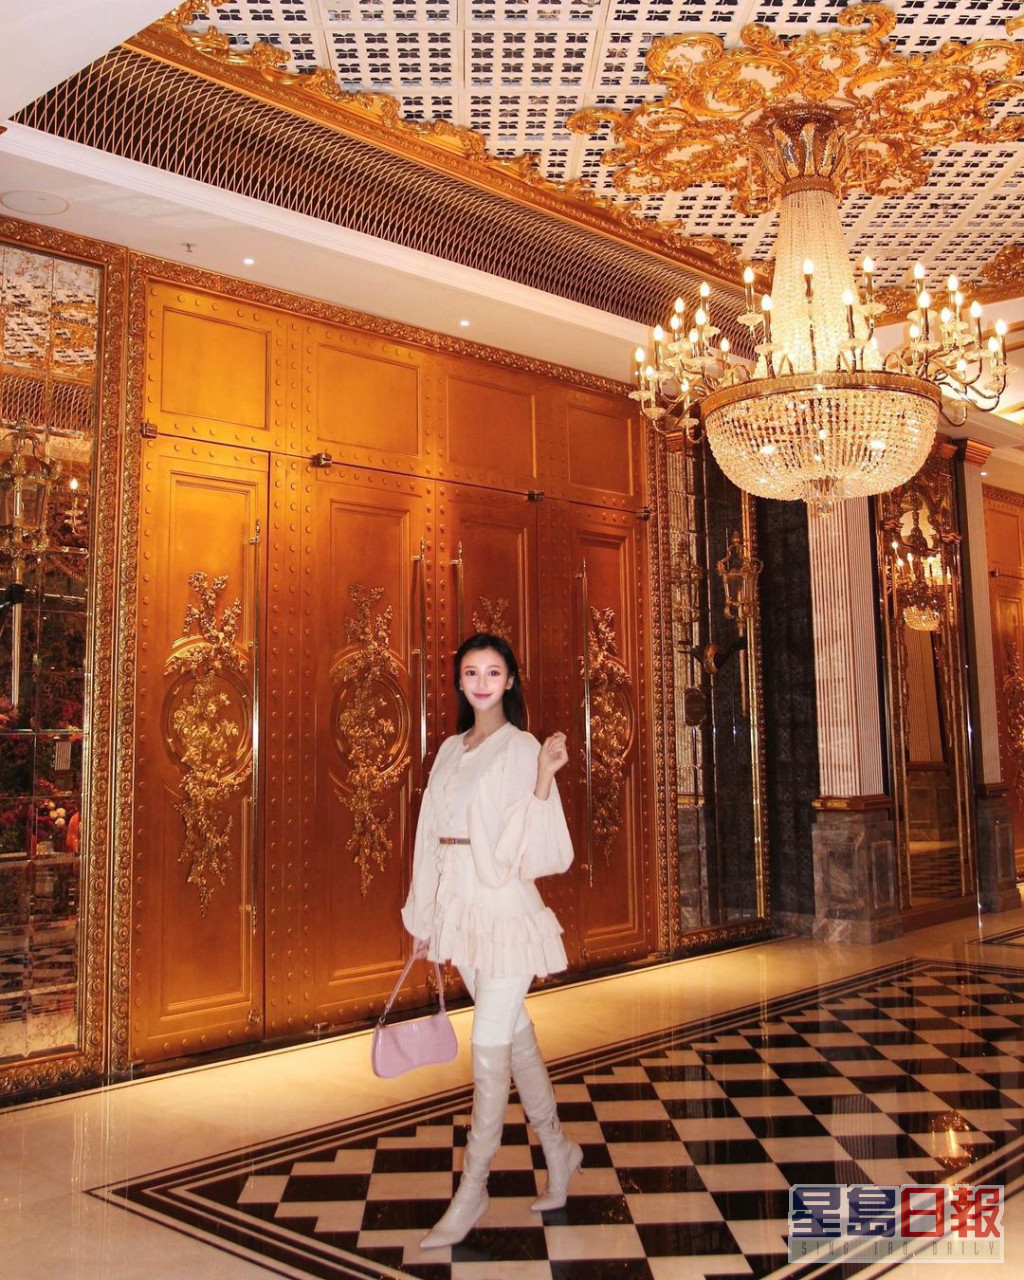 吴玥彤经常出入酒店。